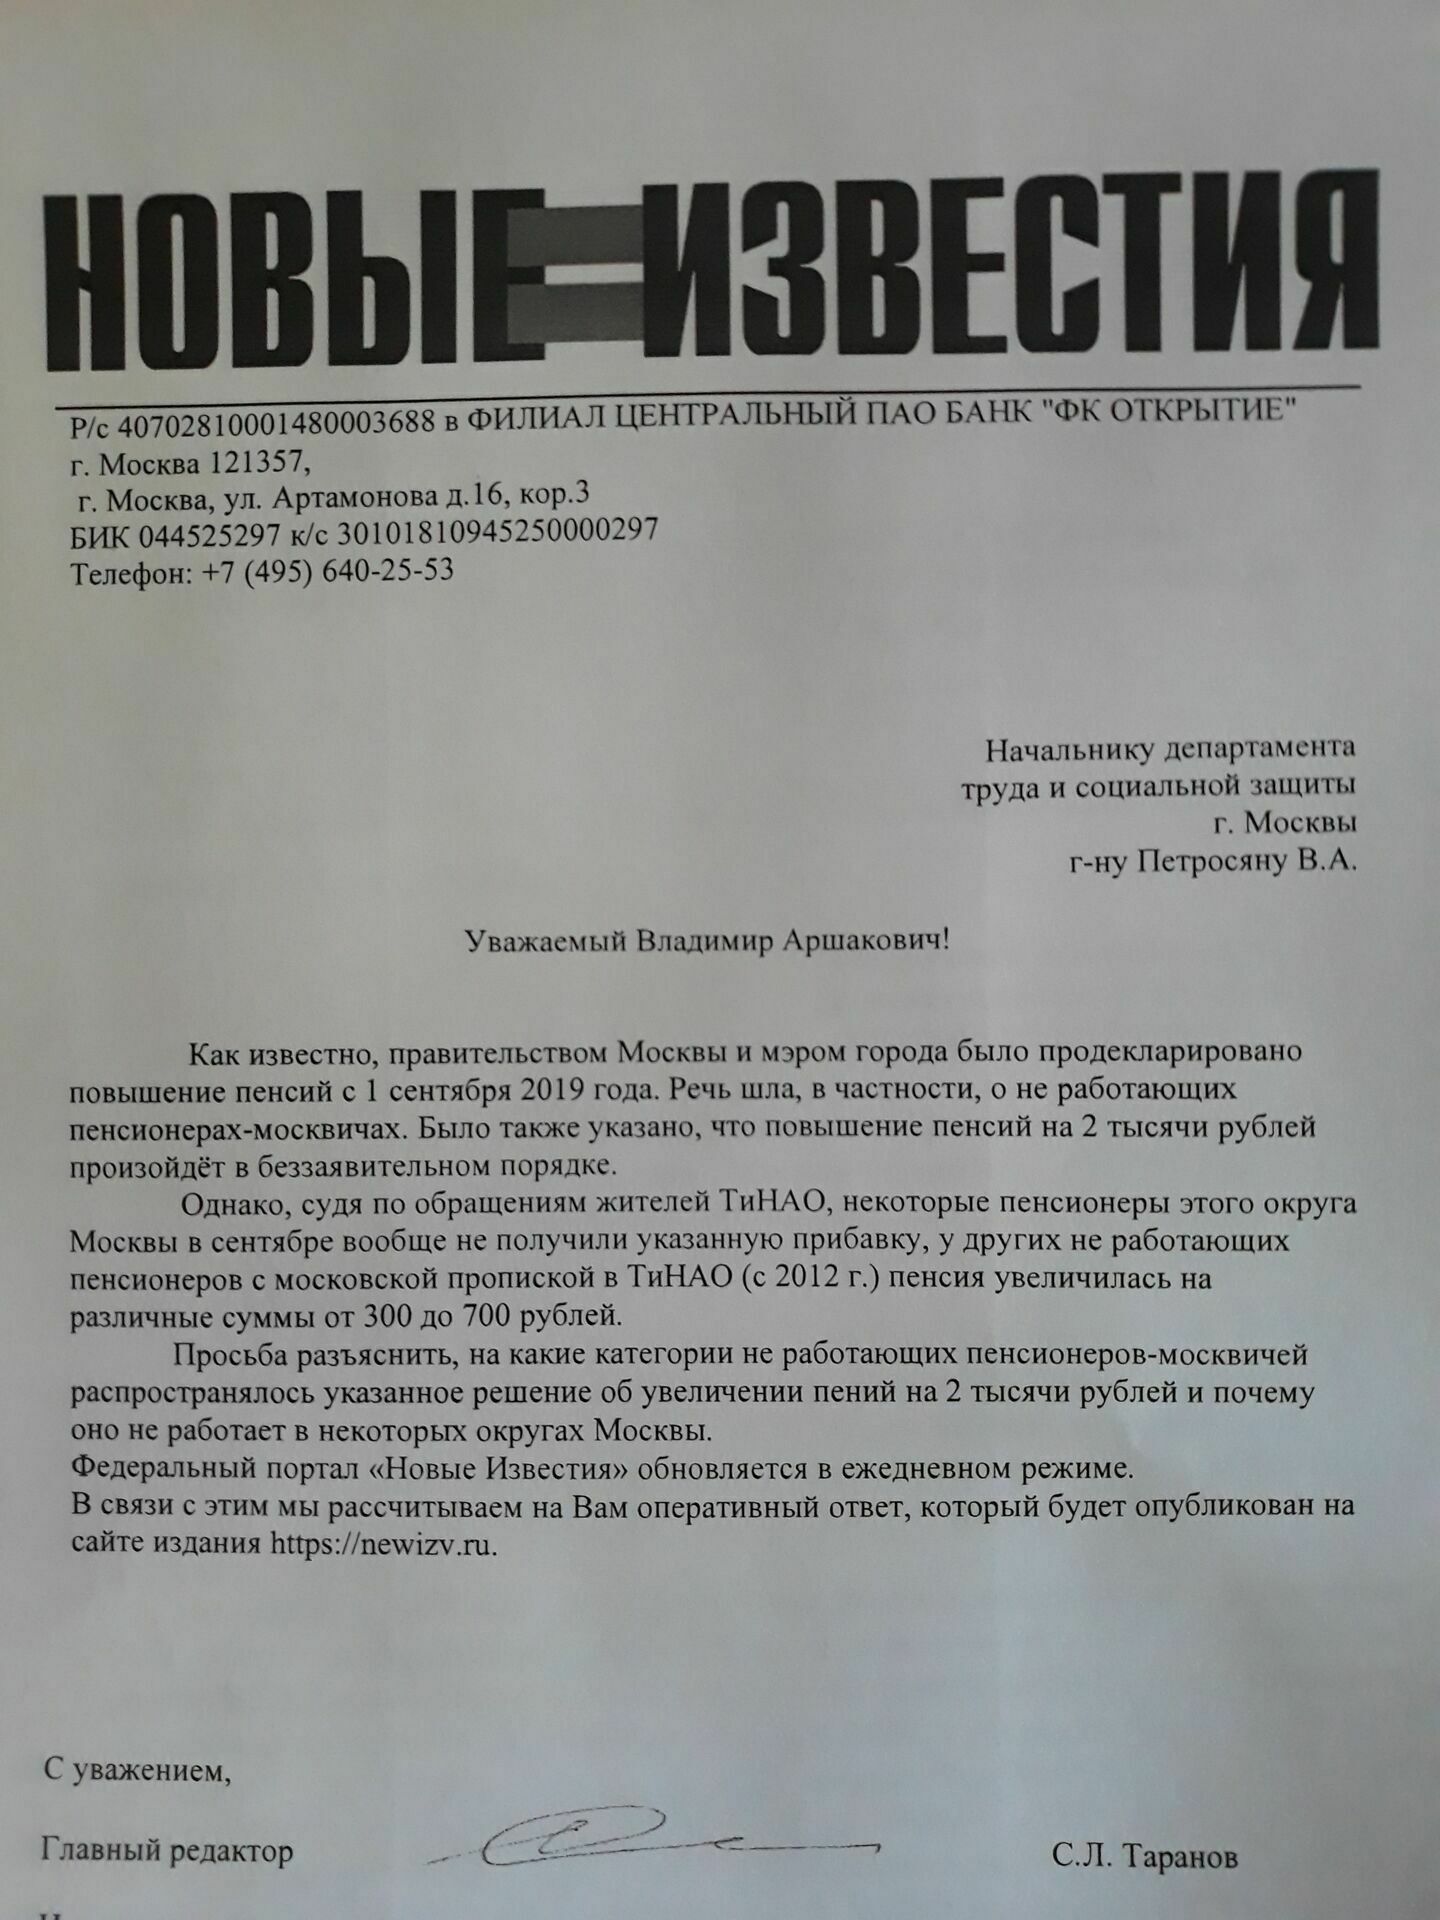 Запрос редакции о механизме  начисления доплат к пенсиям москвичей остался без ответа.